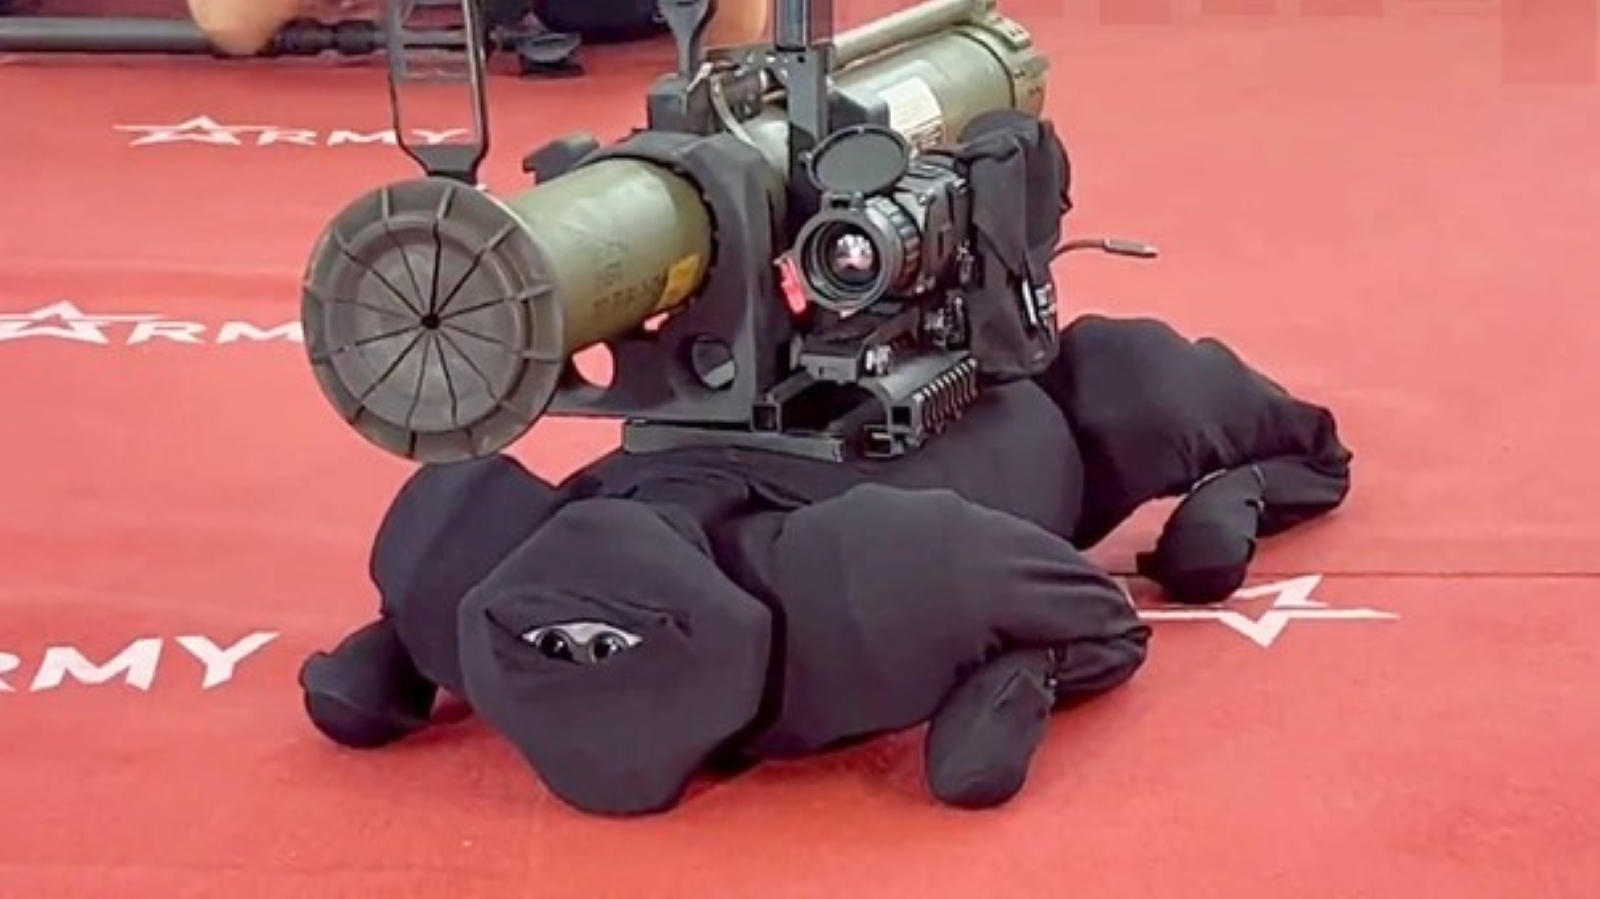 Le robot-chien lance-roquette est malheureusement une réalité, et il est russe